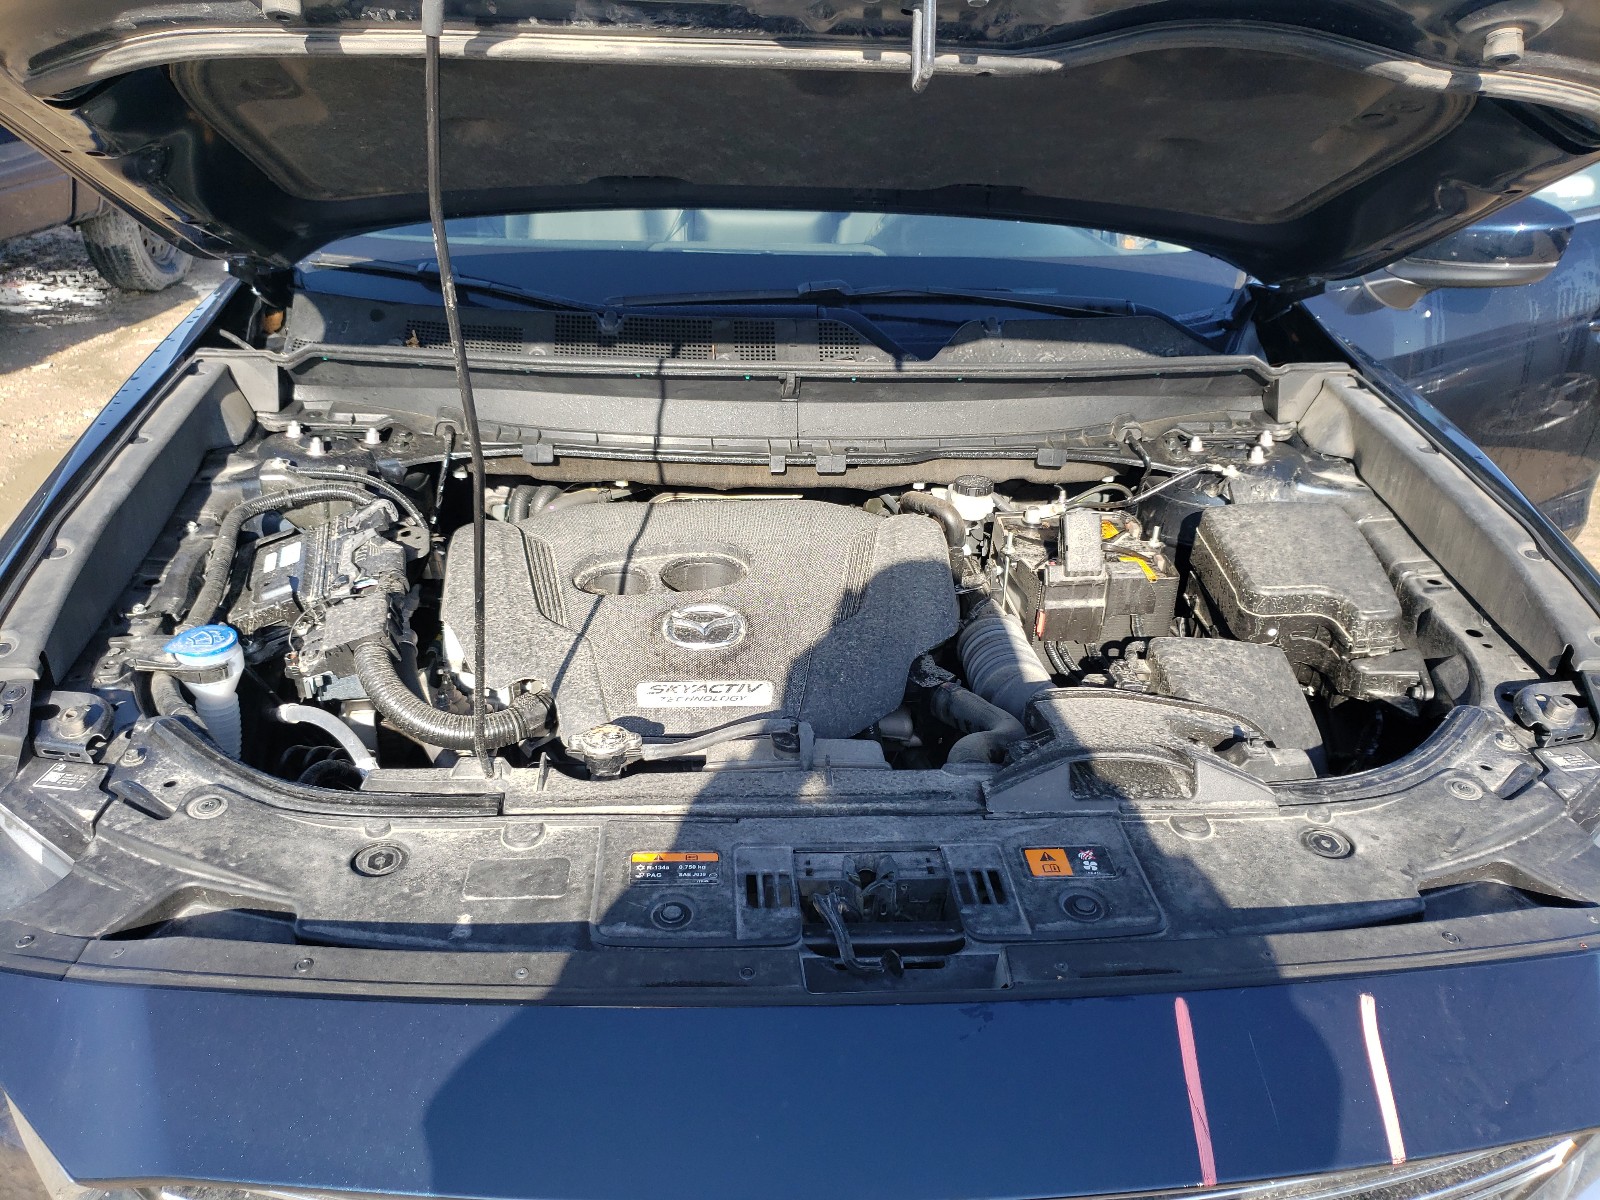 Mazda Cx-9 touri 2019